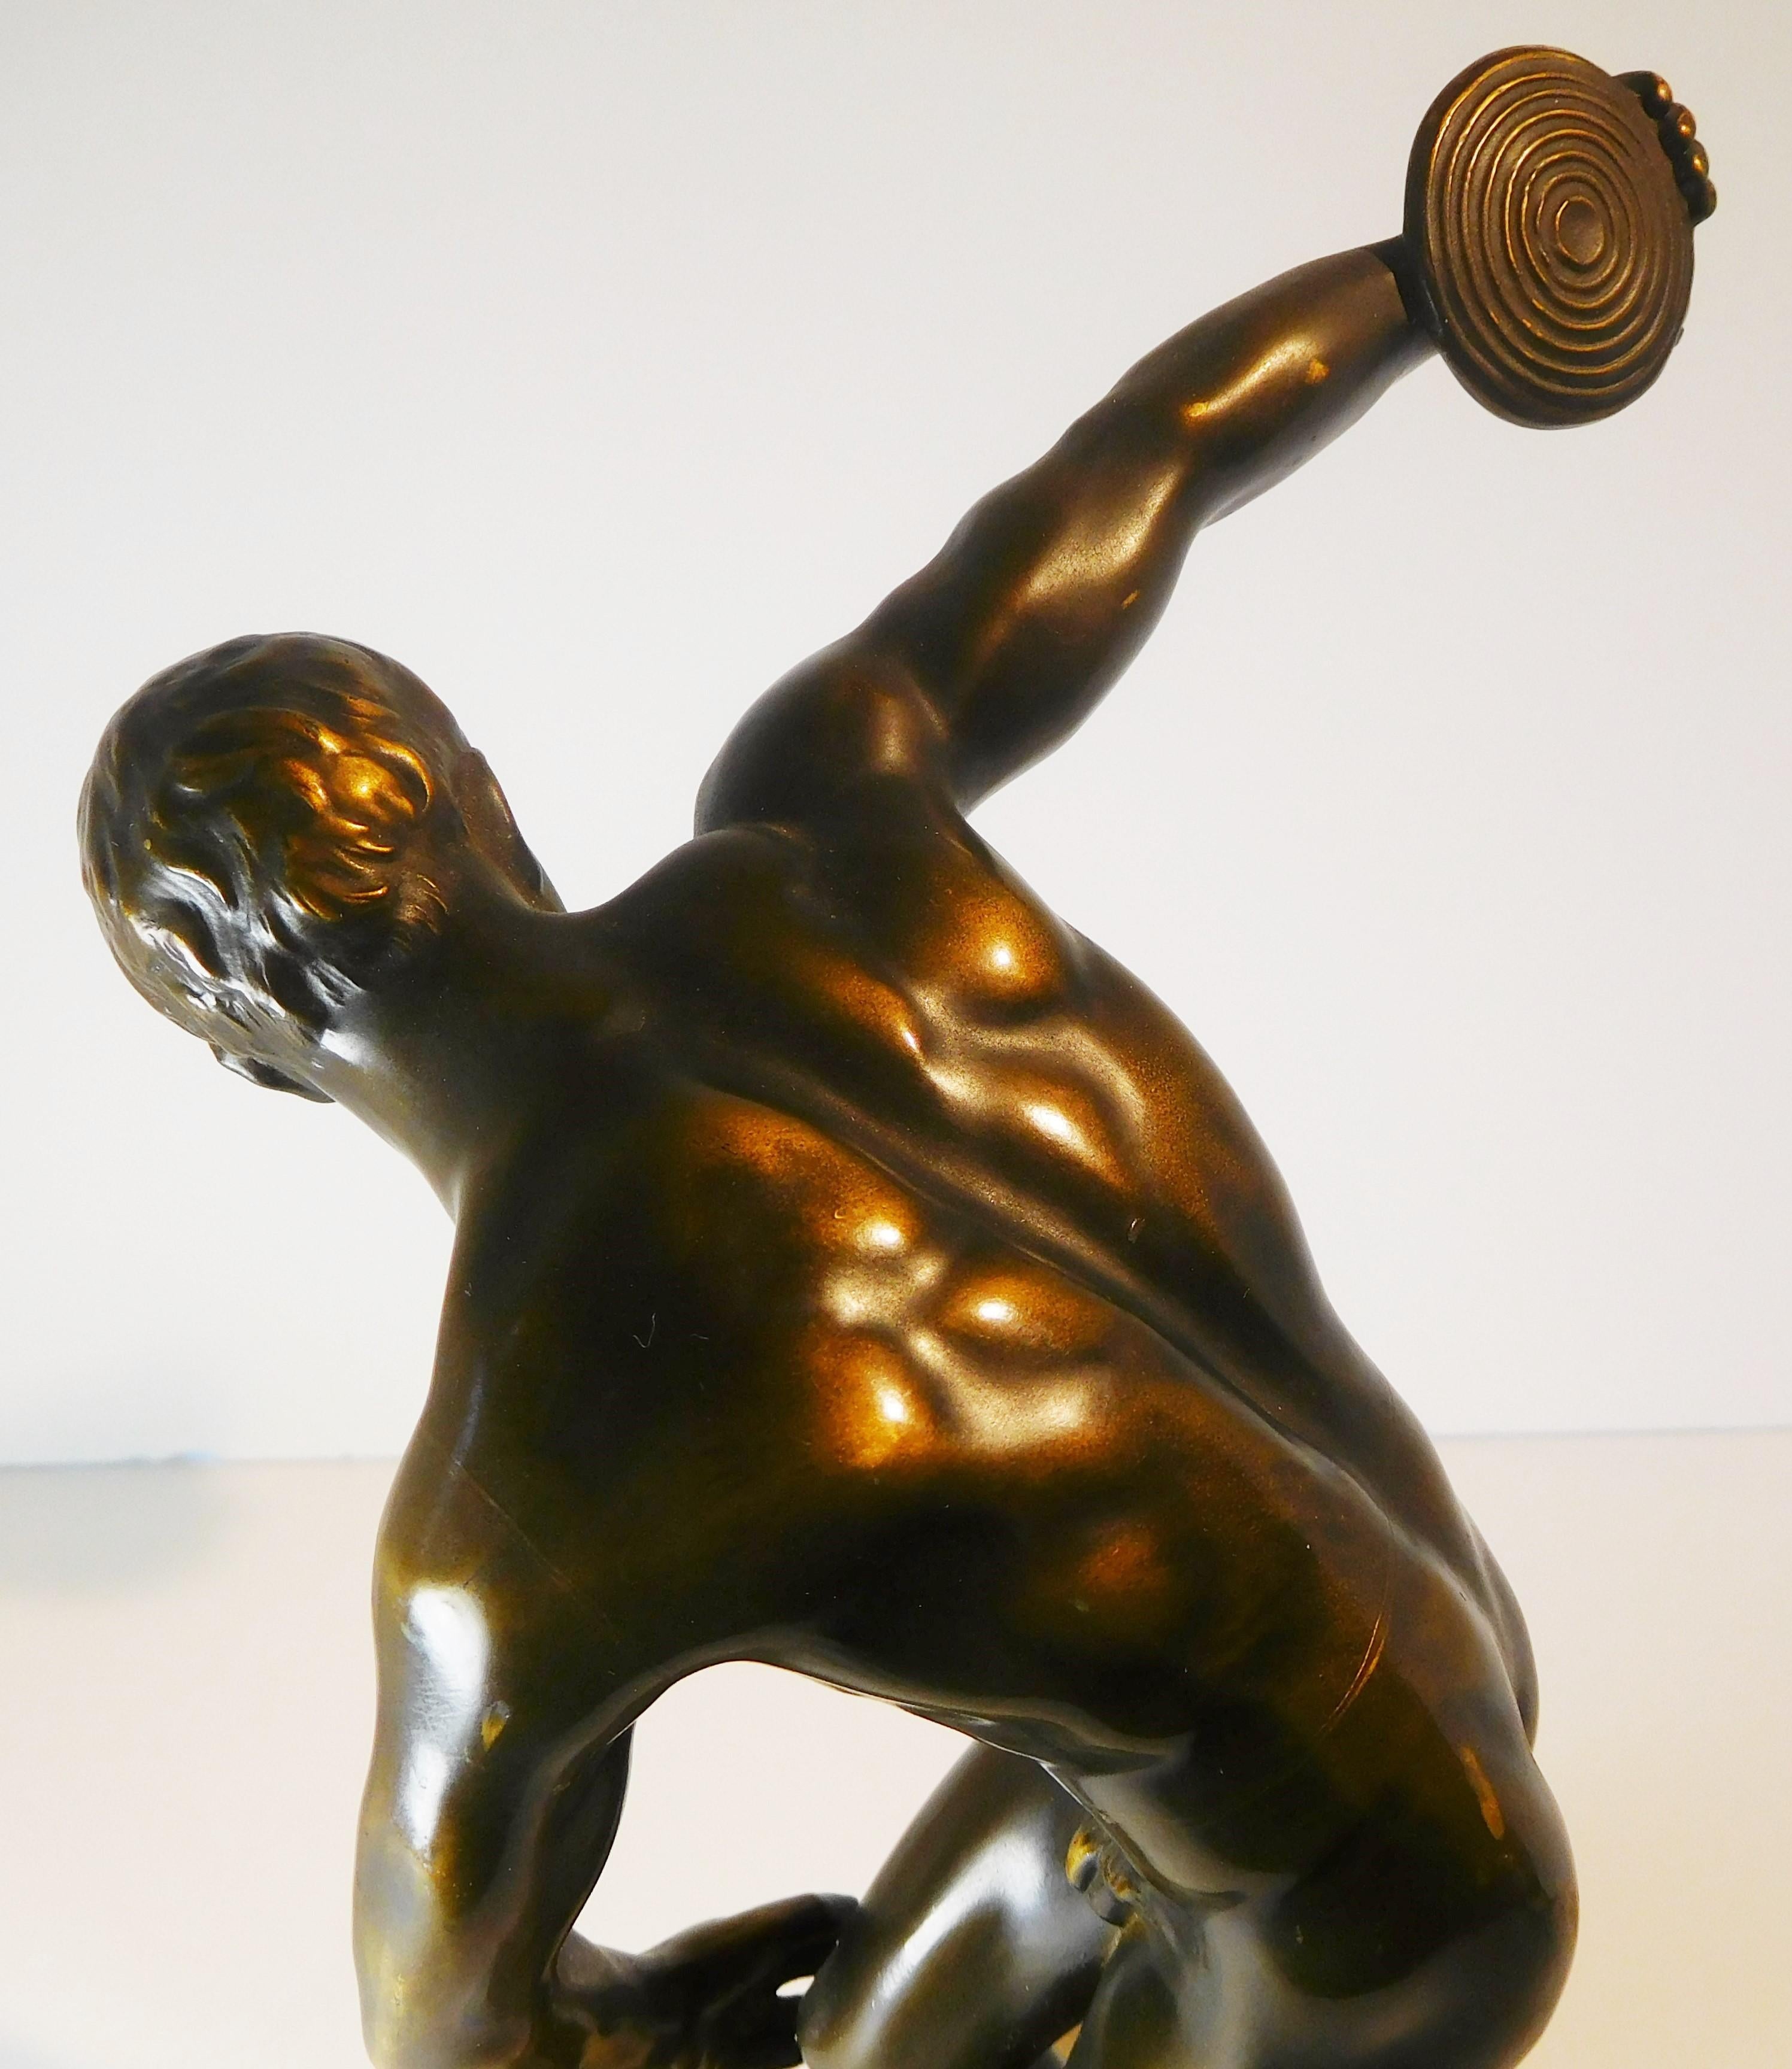 Grand Tour Souvenir Bronze Figure of Discobolus, After the Antique by Myron For Sale 6